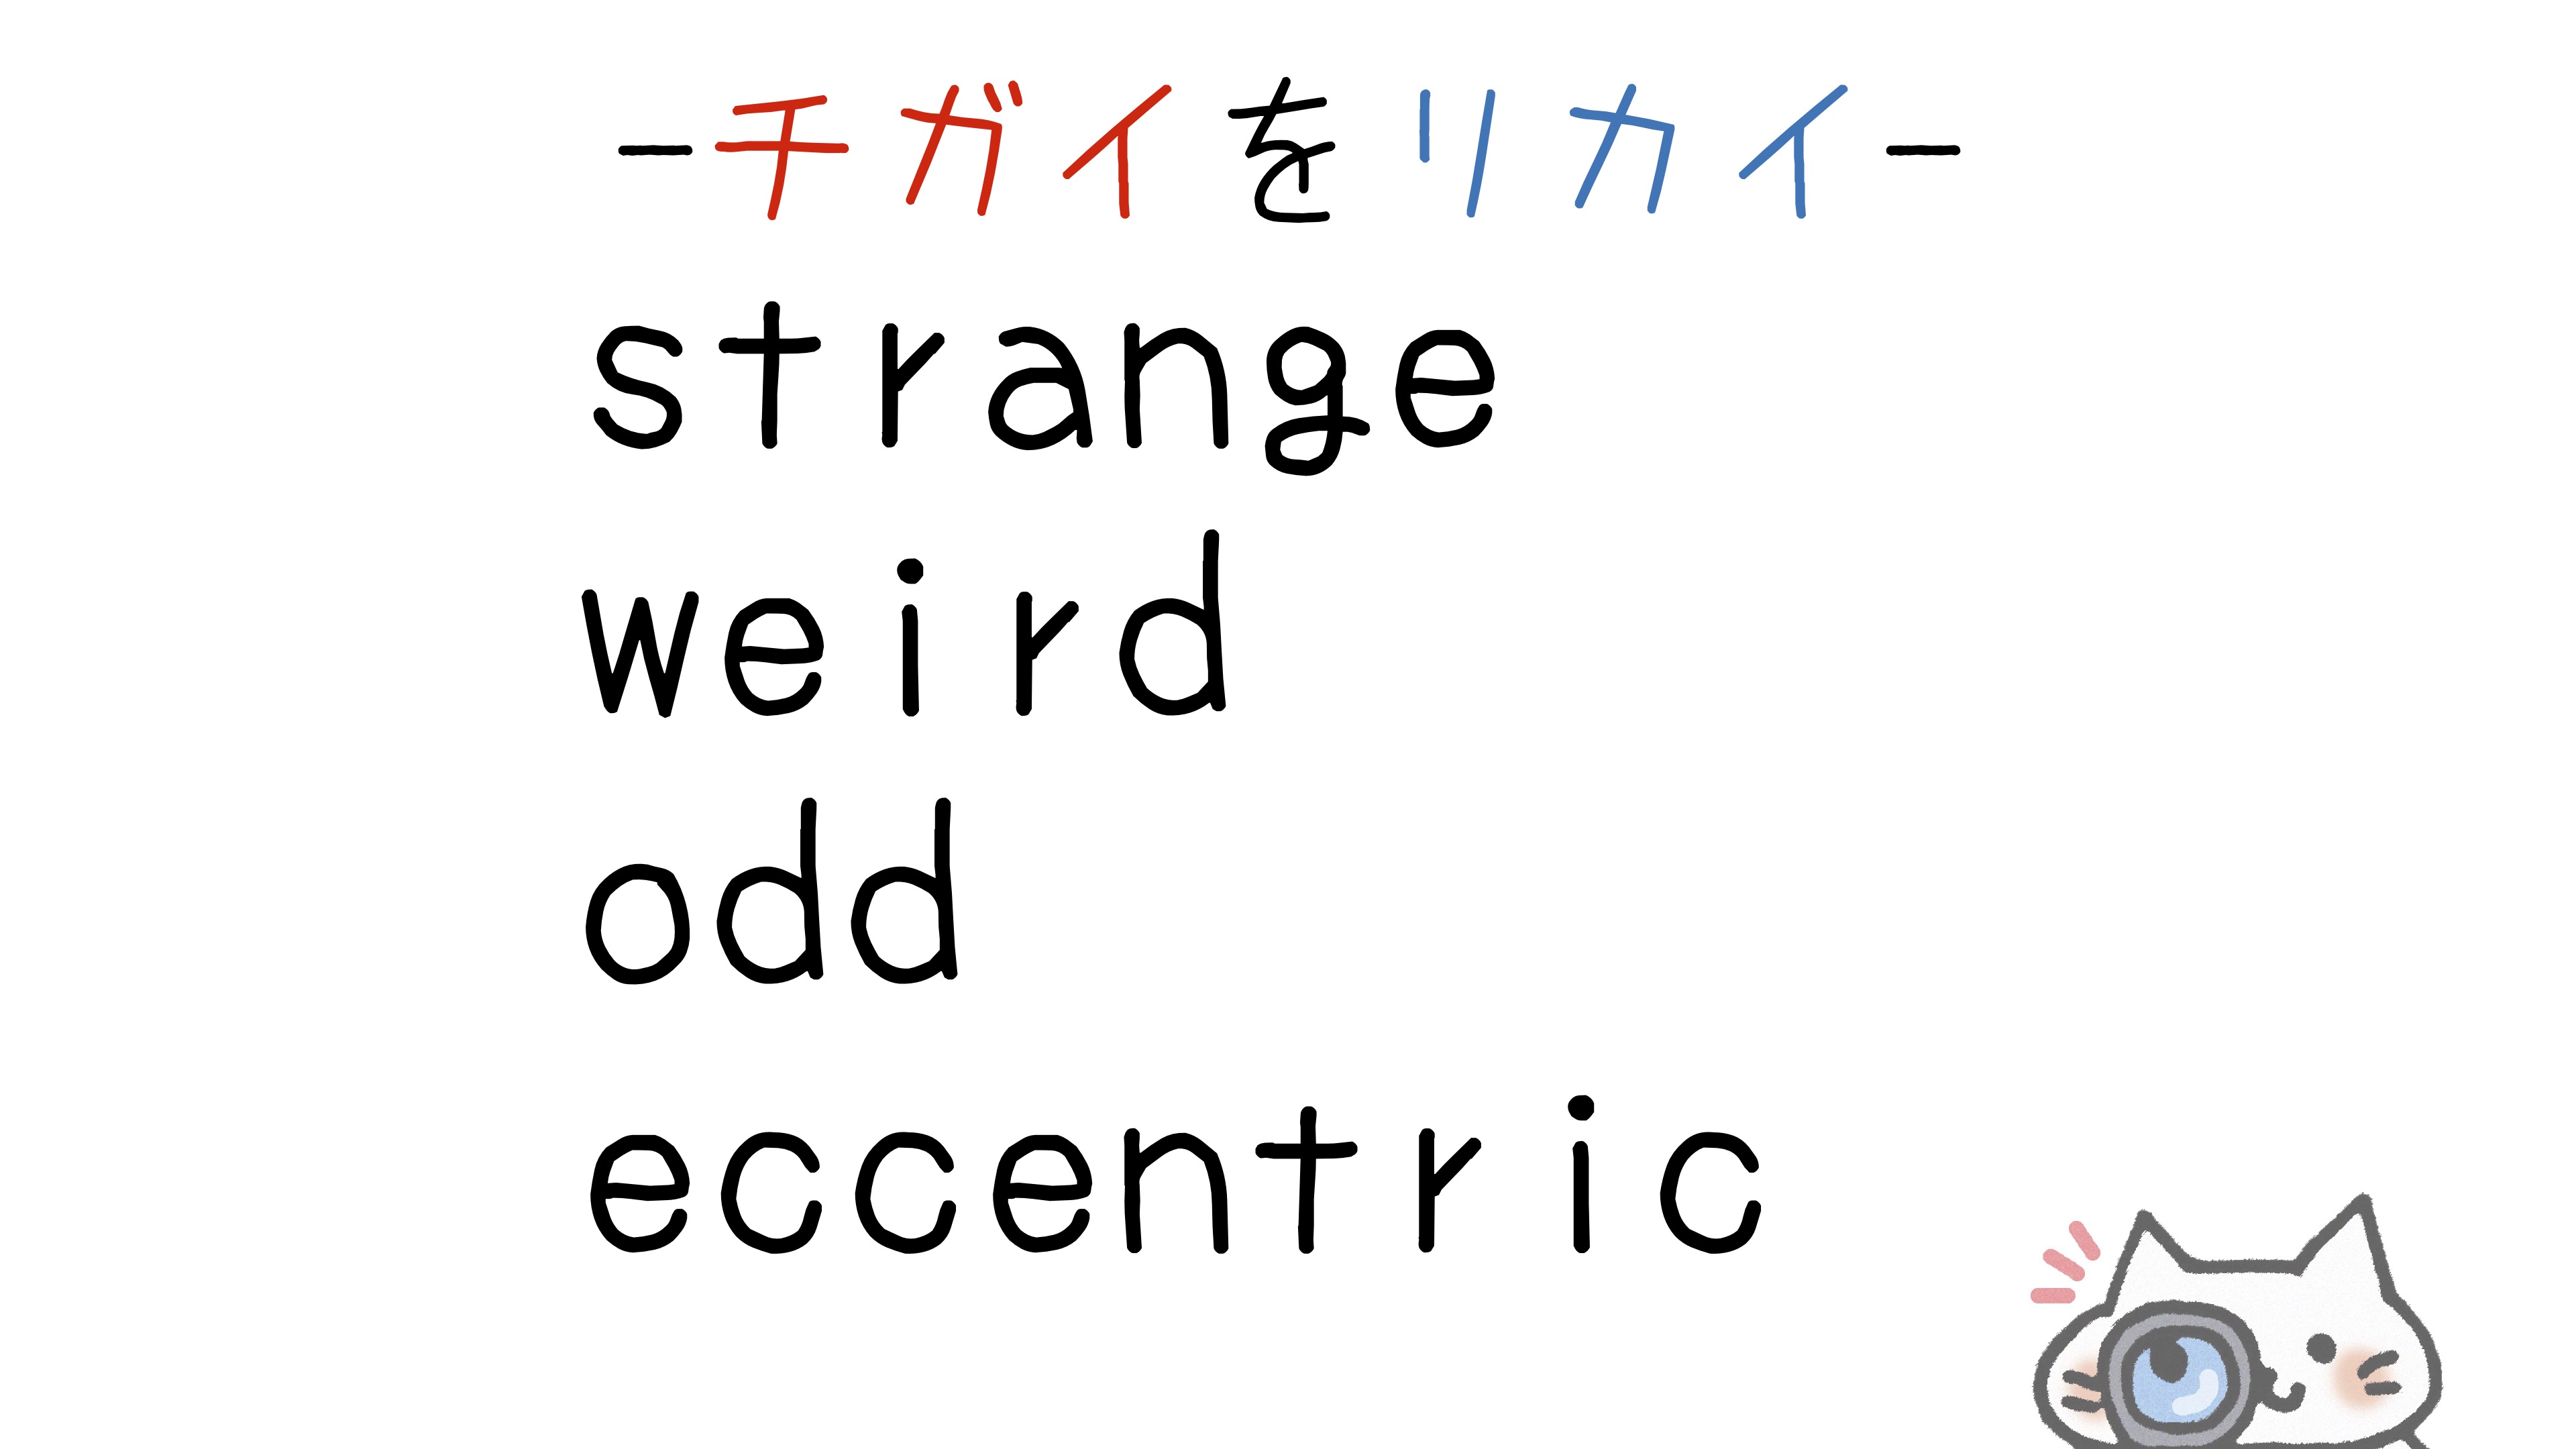 【英語】strange/weird/odd/eccentric(奇妙な・変な)の意味の違いと使い分け